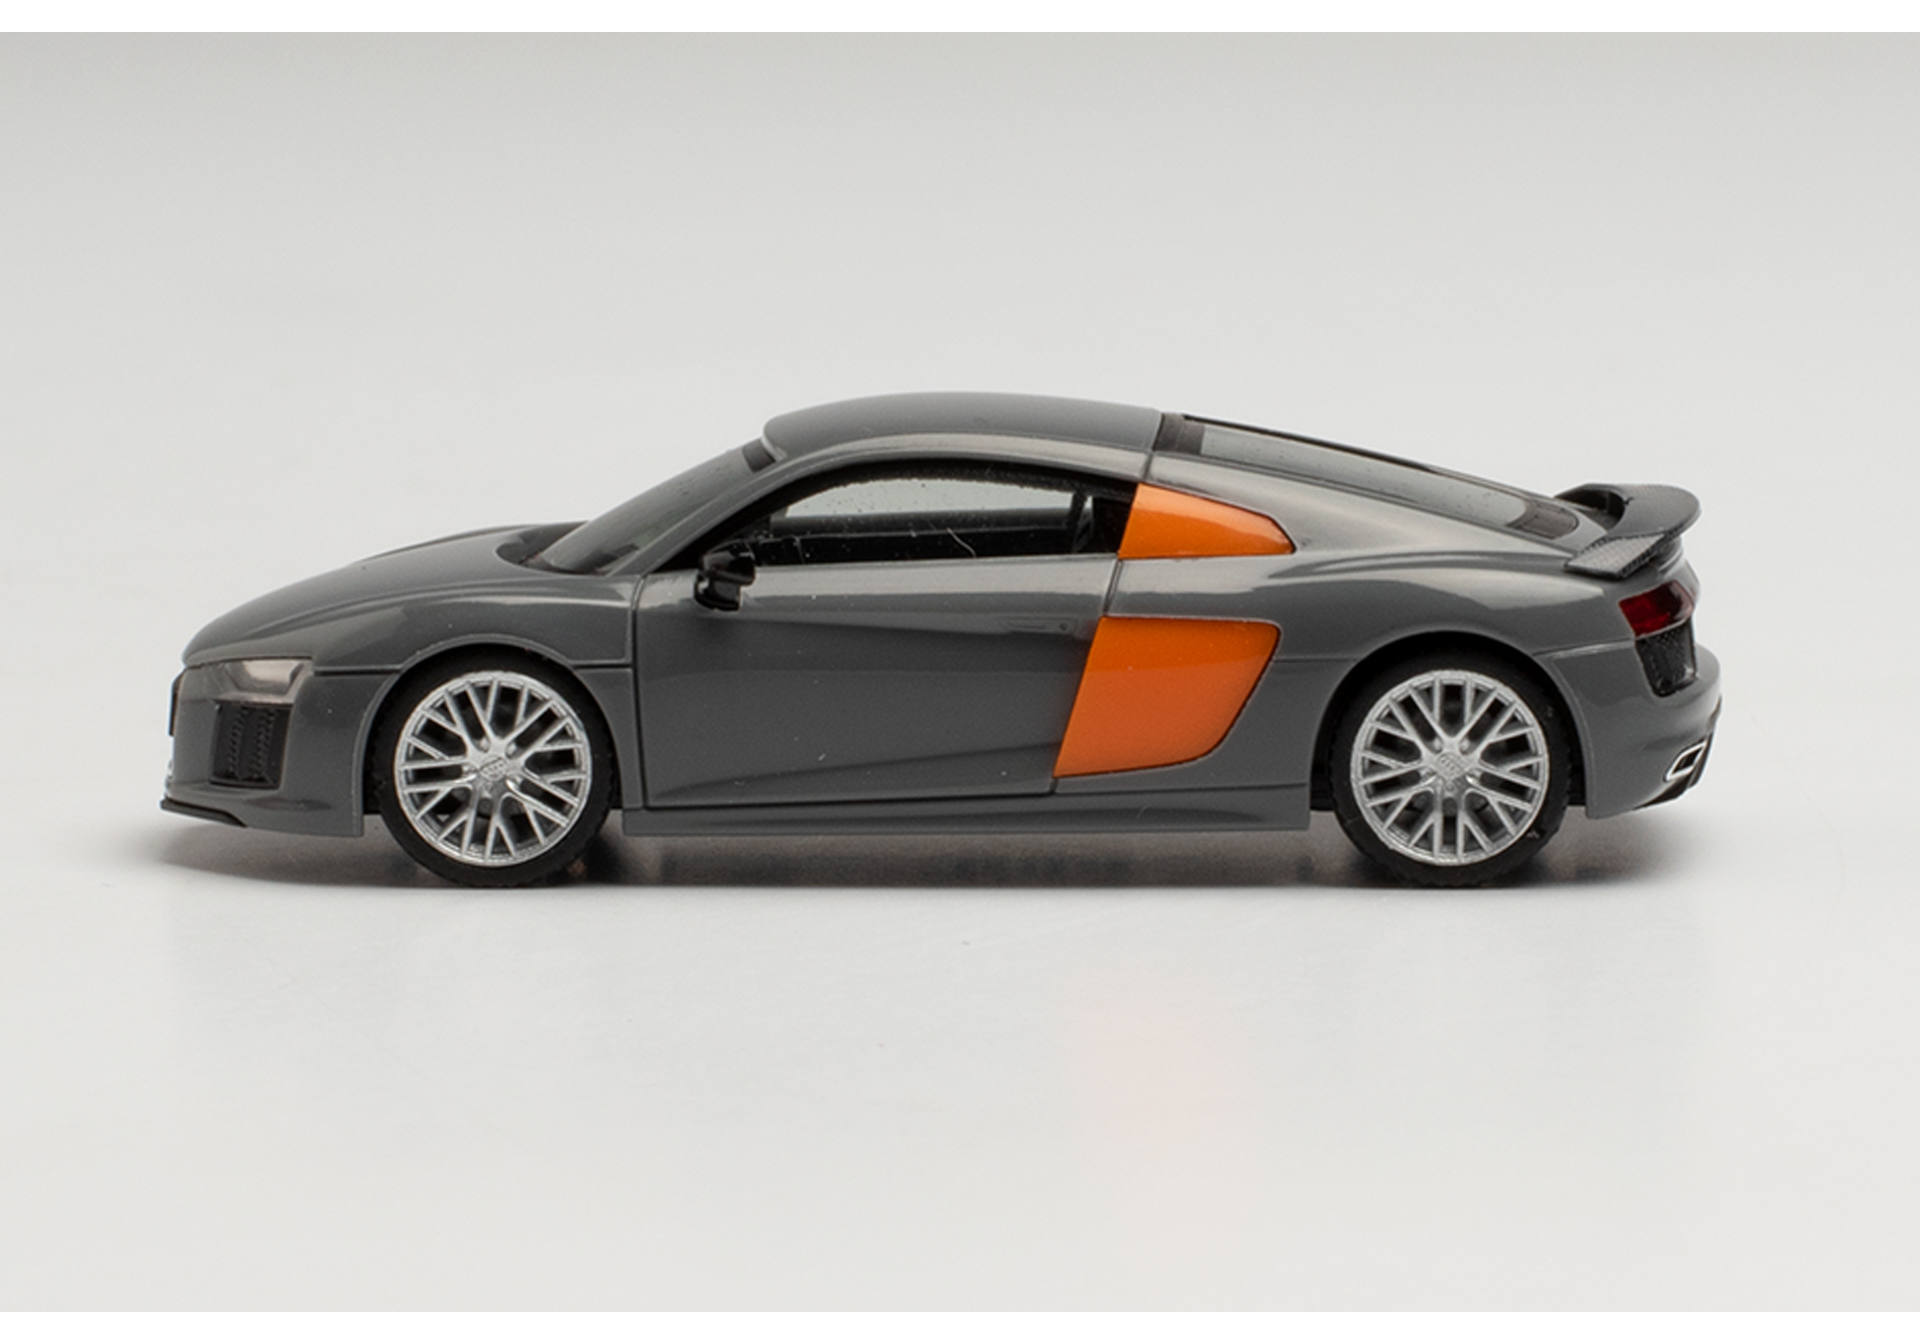 Audi R8 V10 Plus, nardo grey / Blade orange